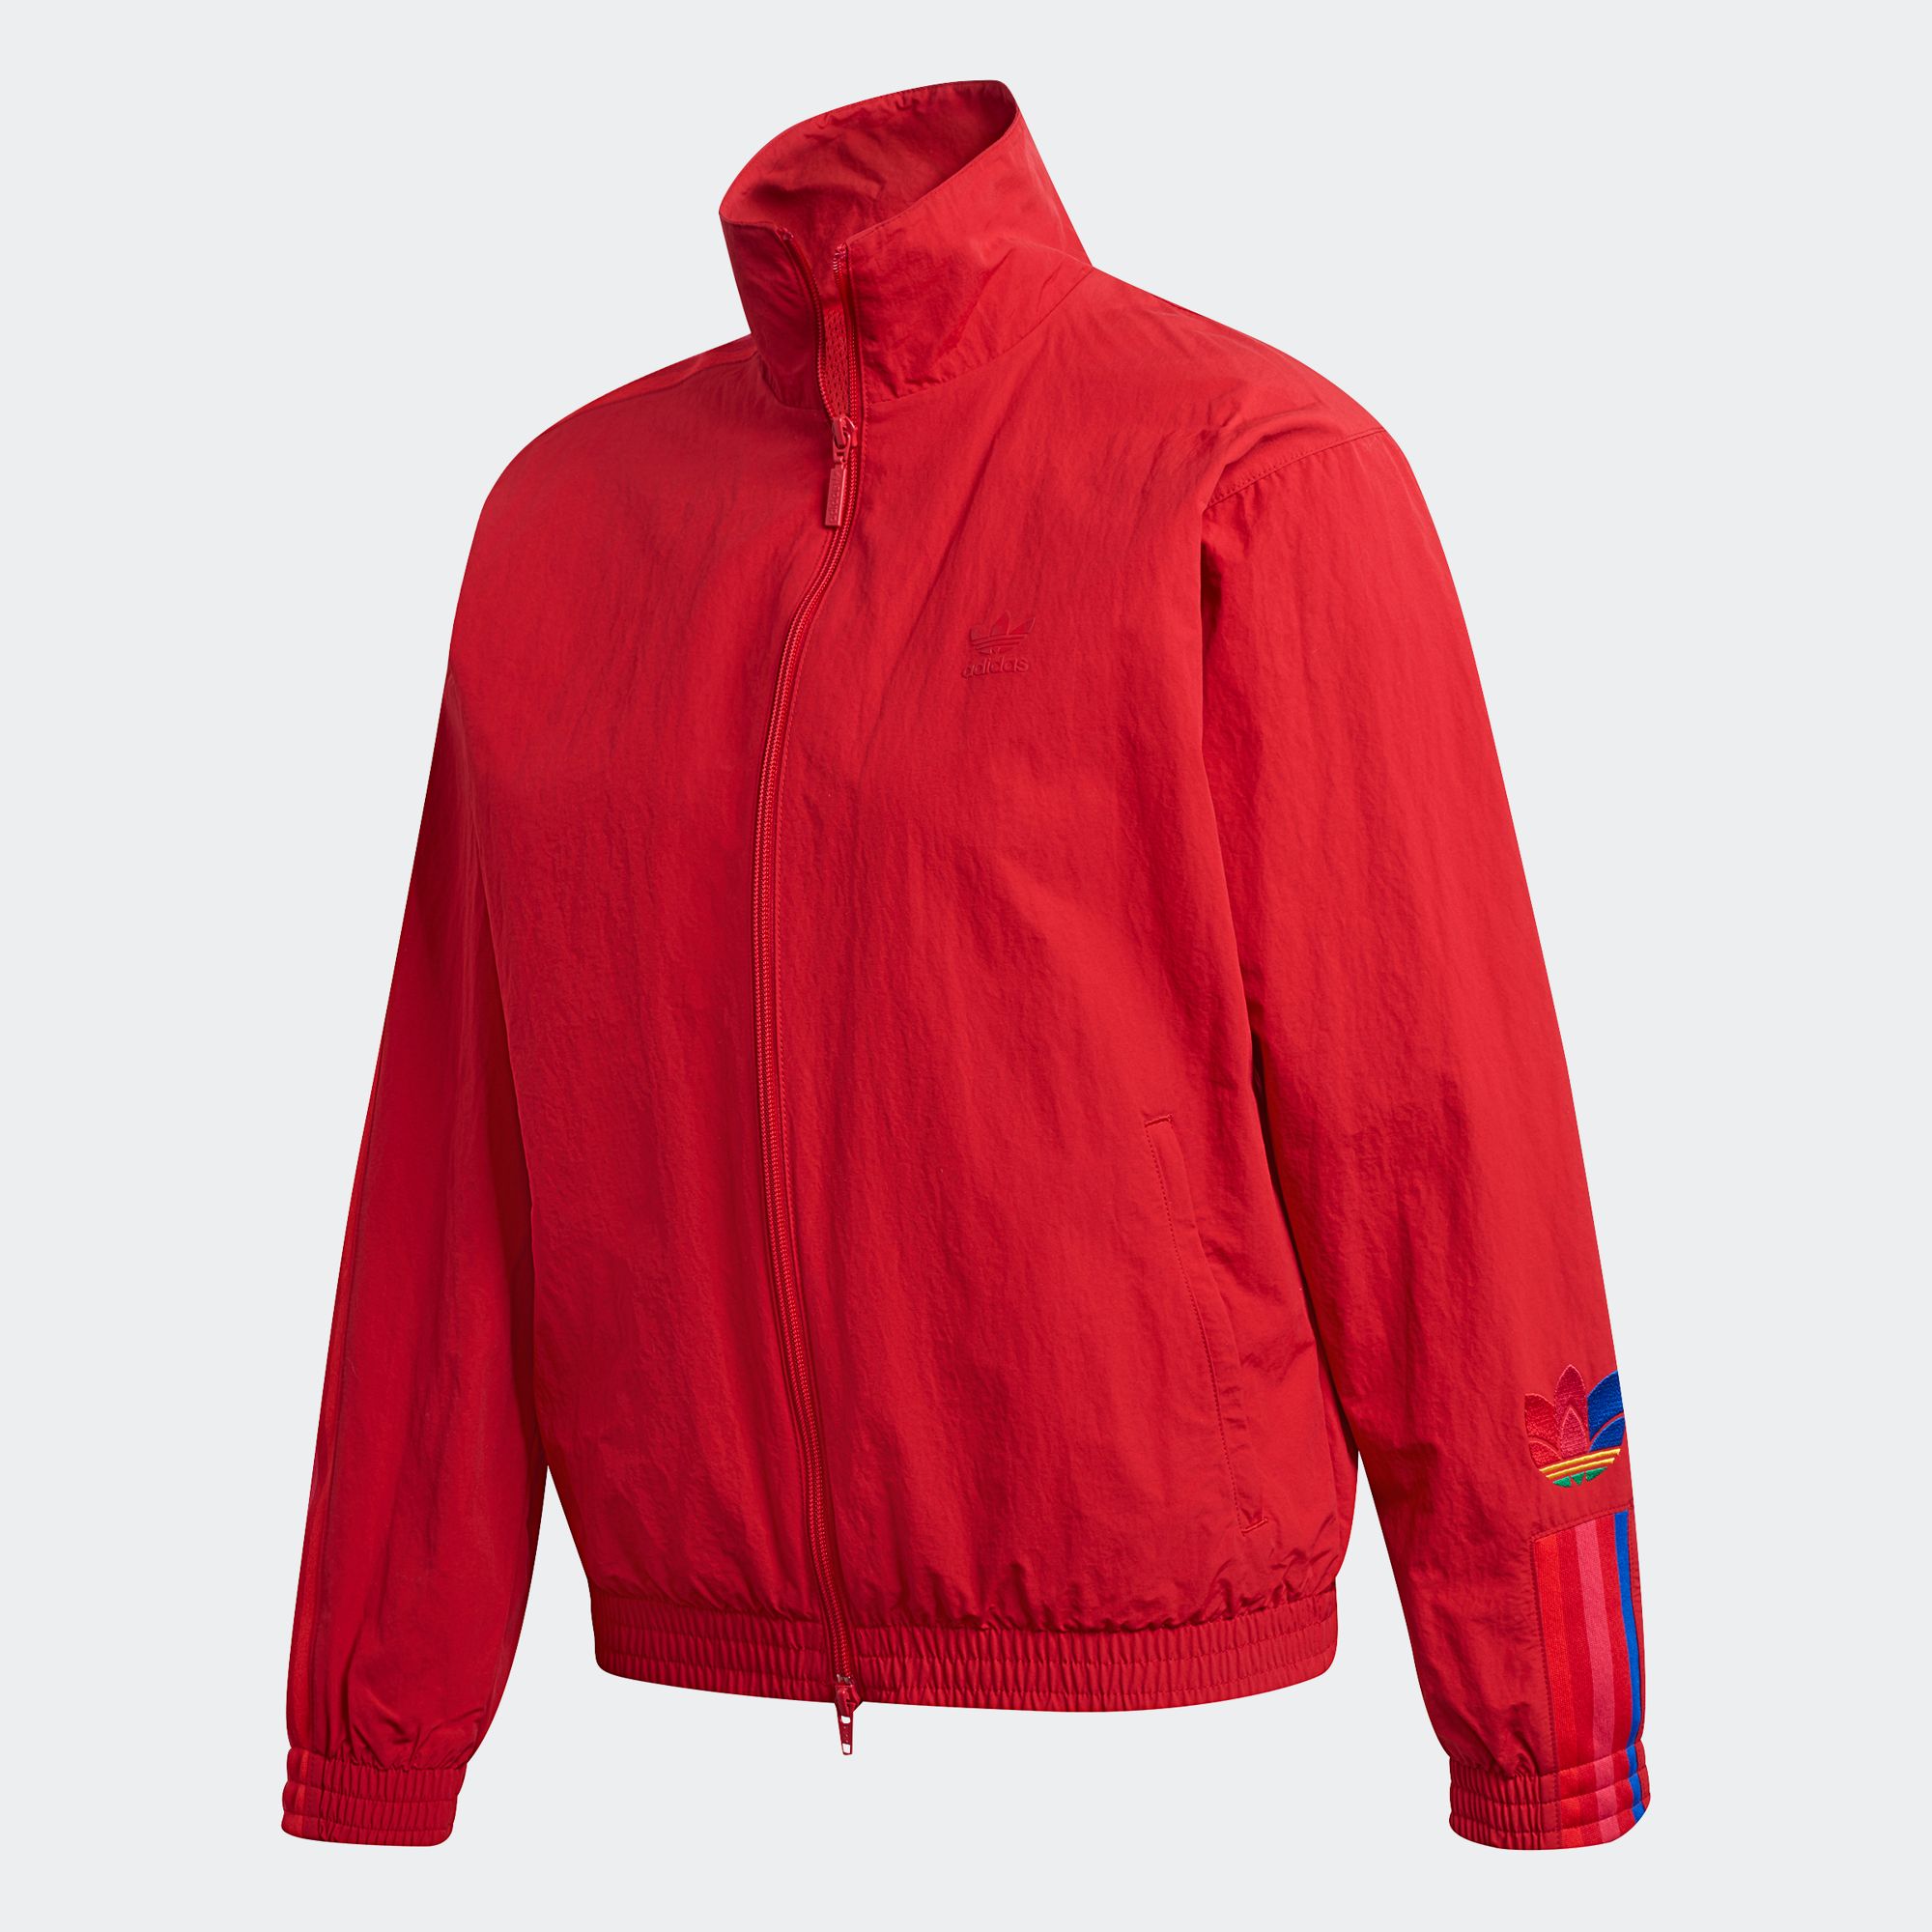 adidas ORIGINALS เสื้อแทรคแจ็คเก็ต ผู้หญิง สีแดง GD2237